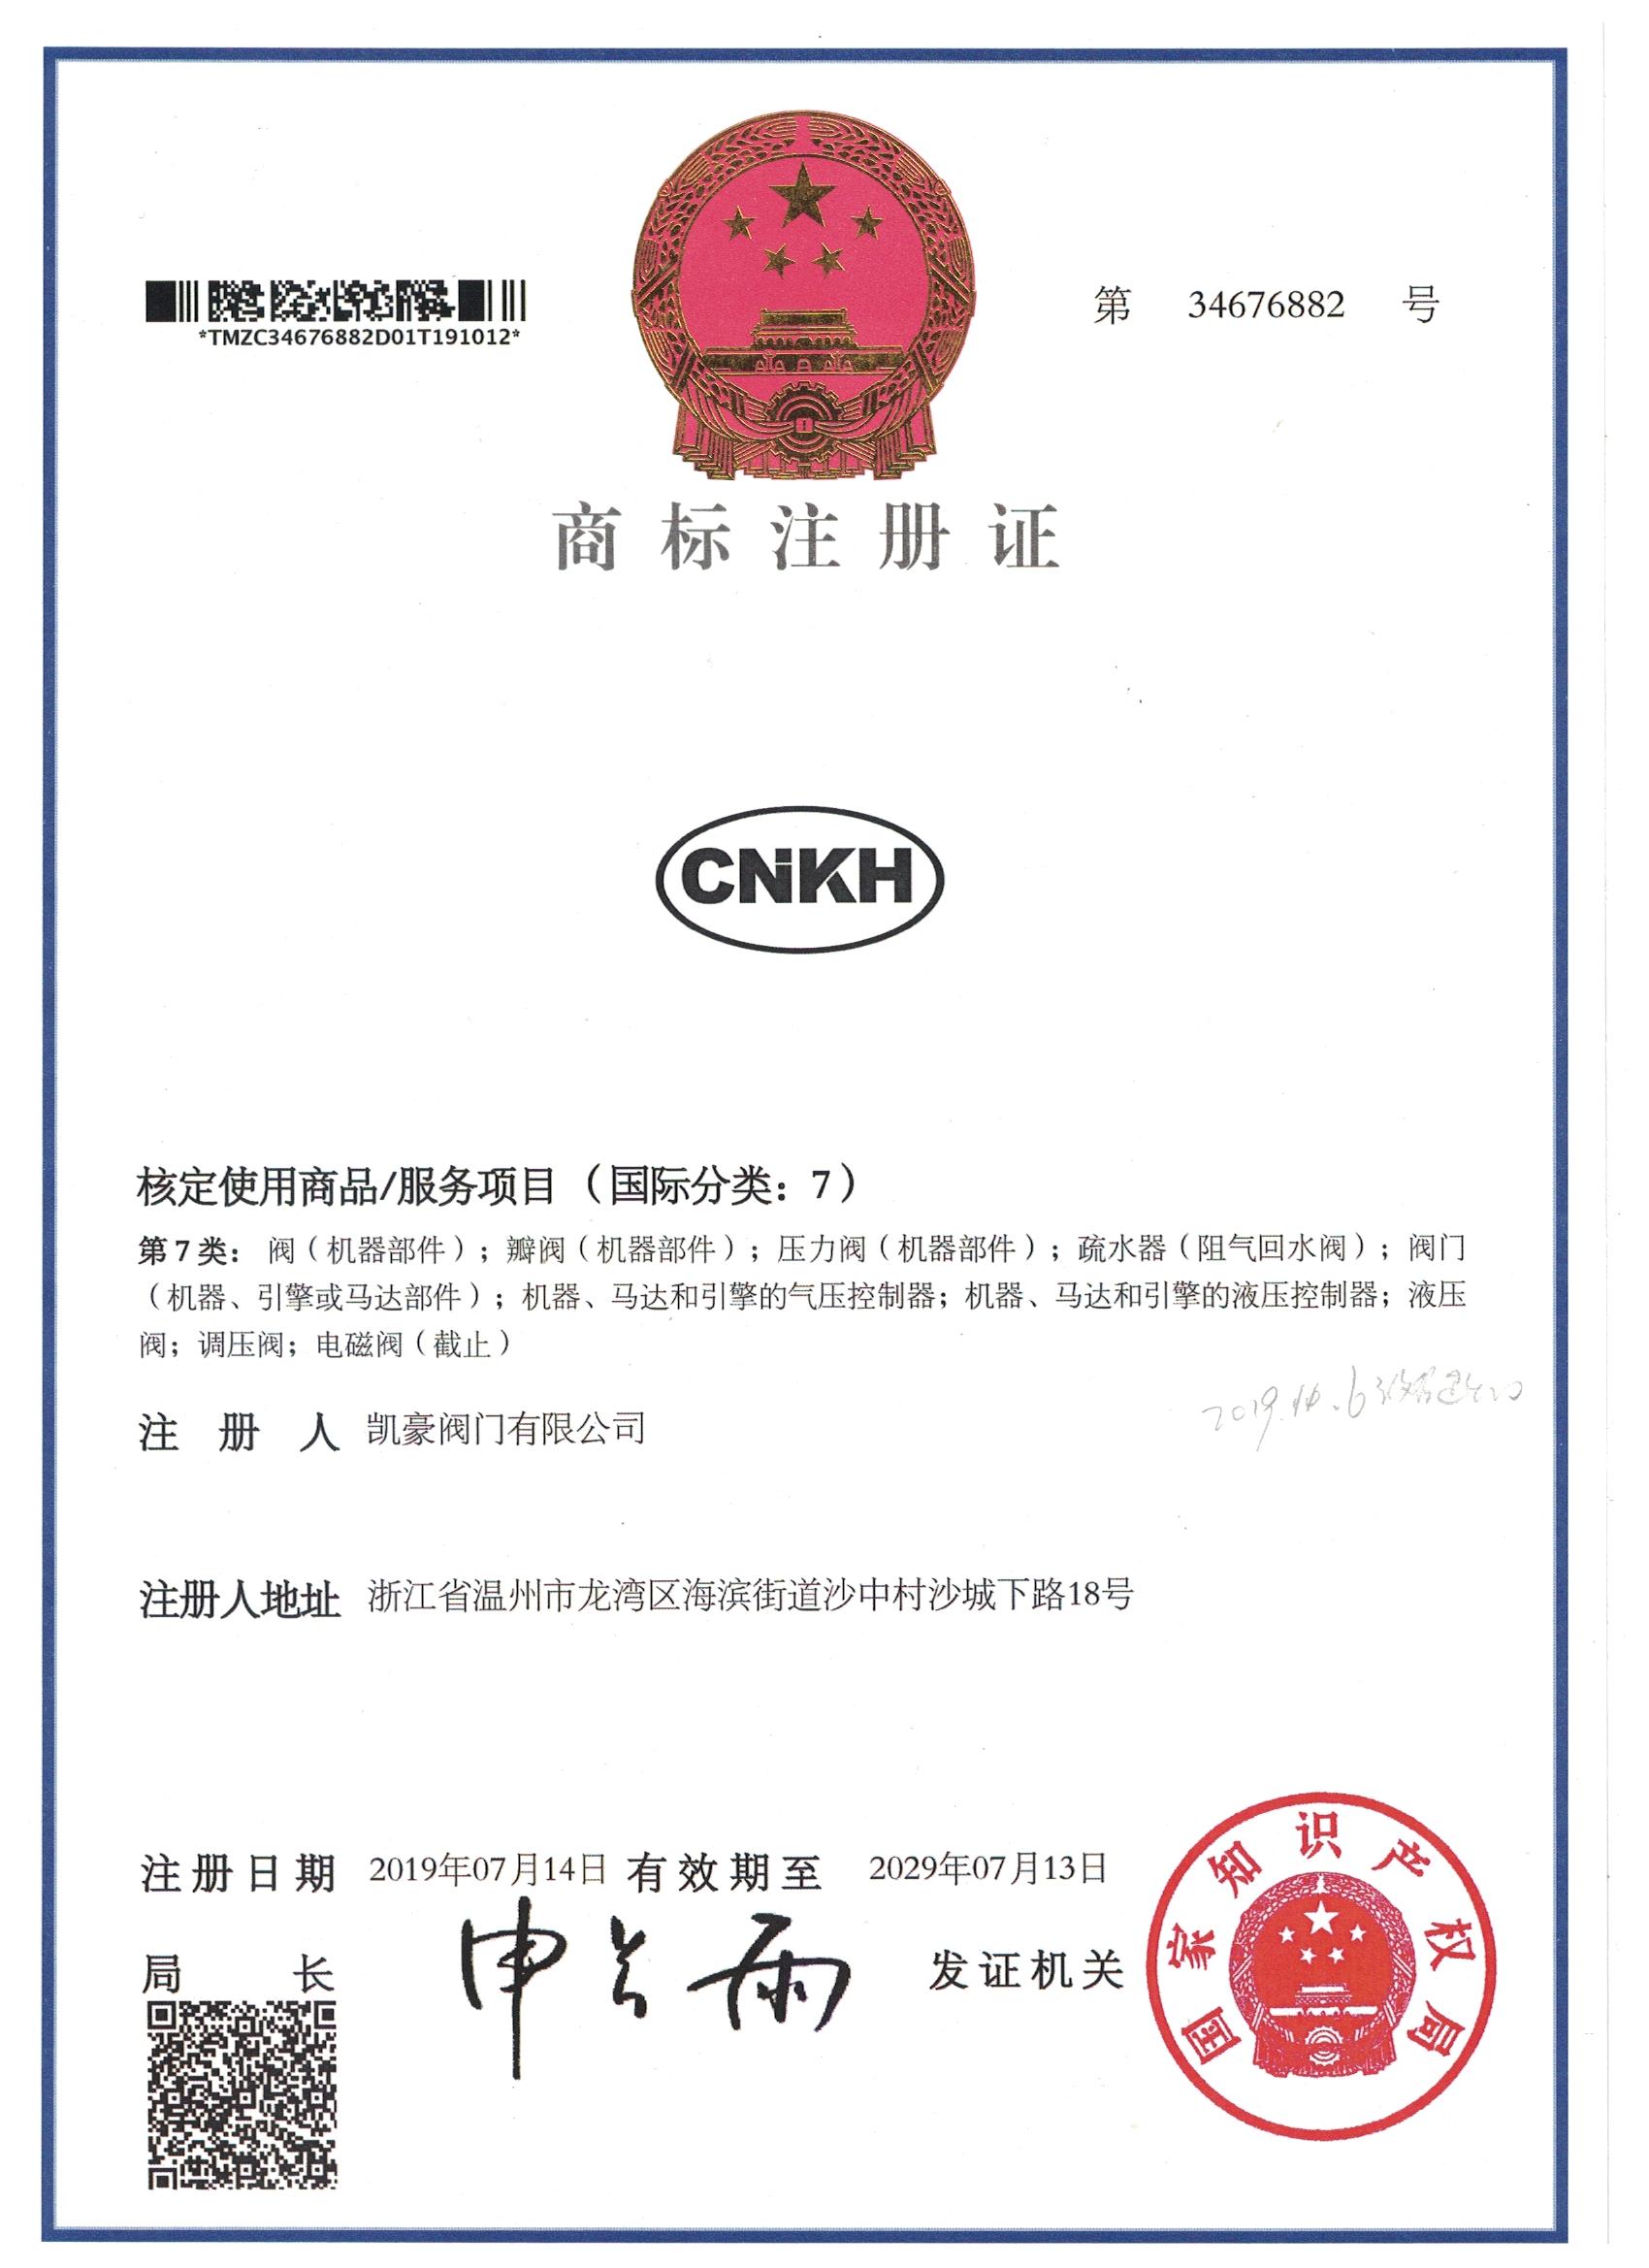 热烈祝贺中国·凯豪阀门有限公司商标注册通过